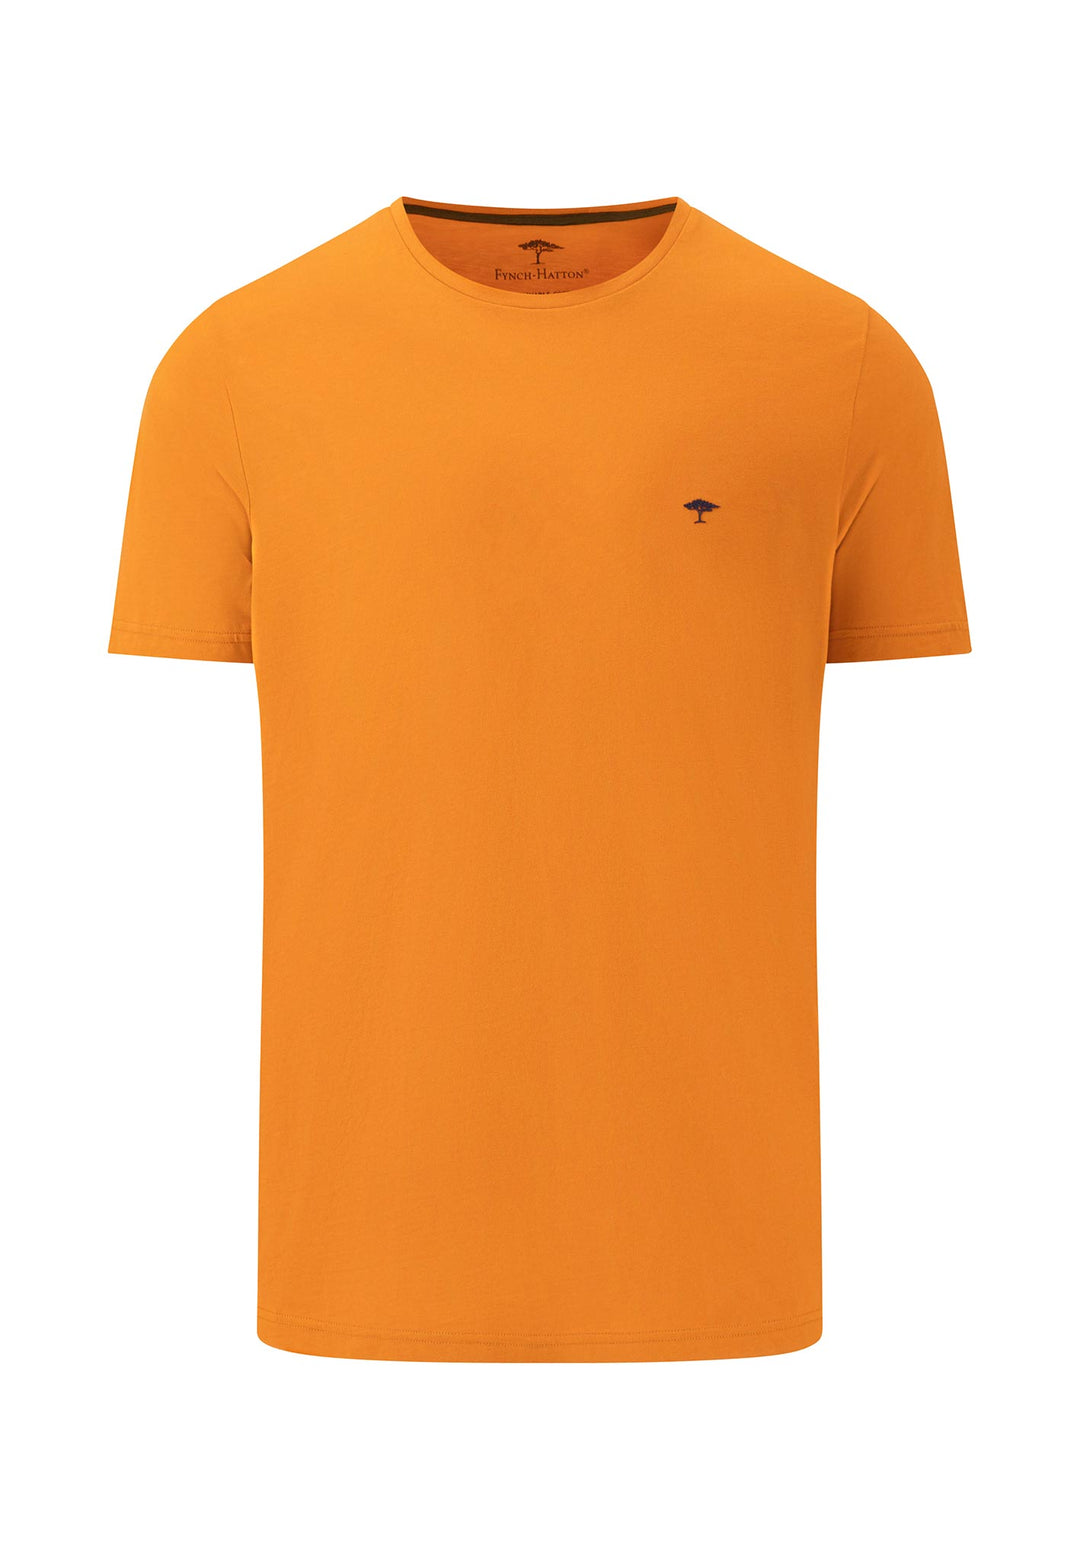 crew – FYNCH-HATTON neck Offizieller Basic t-shirt | Online Shop